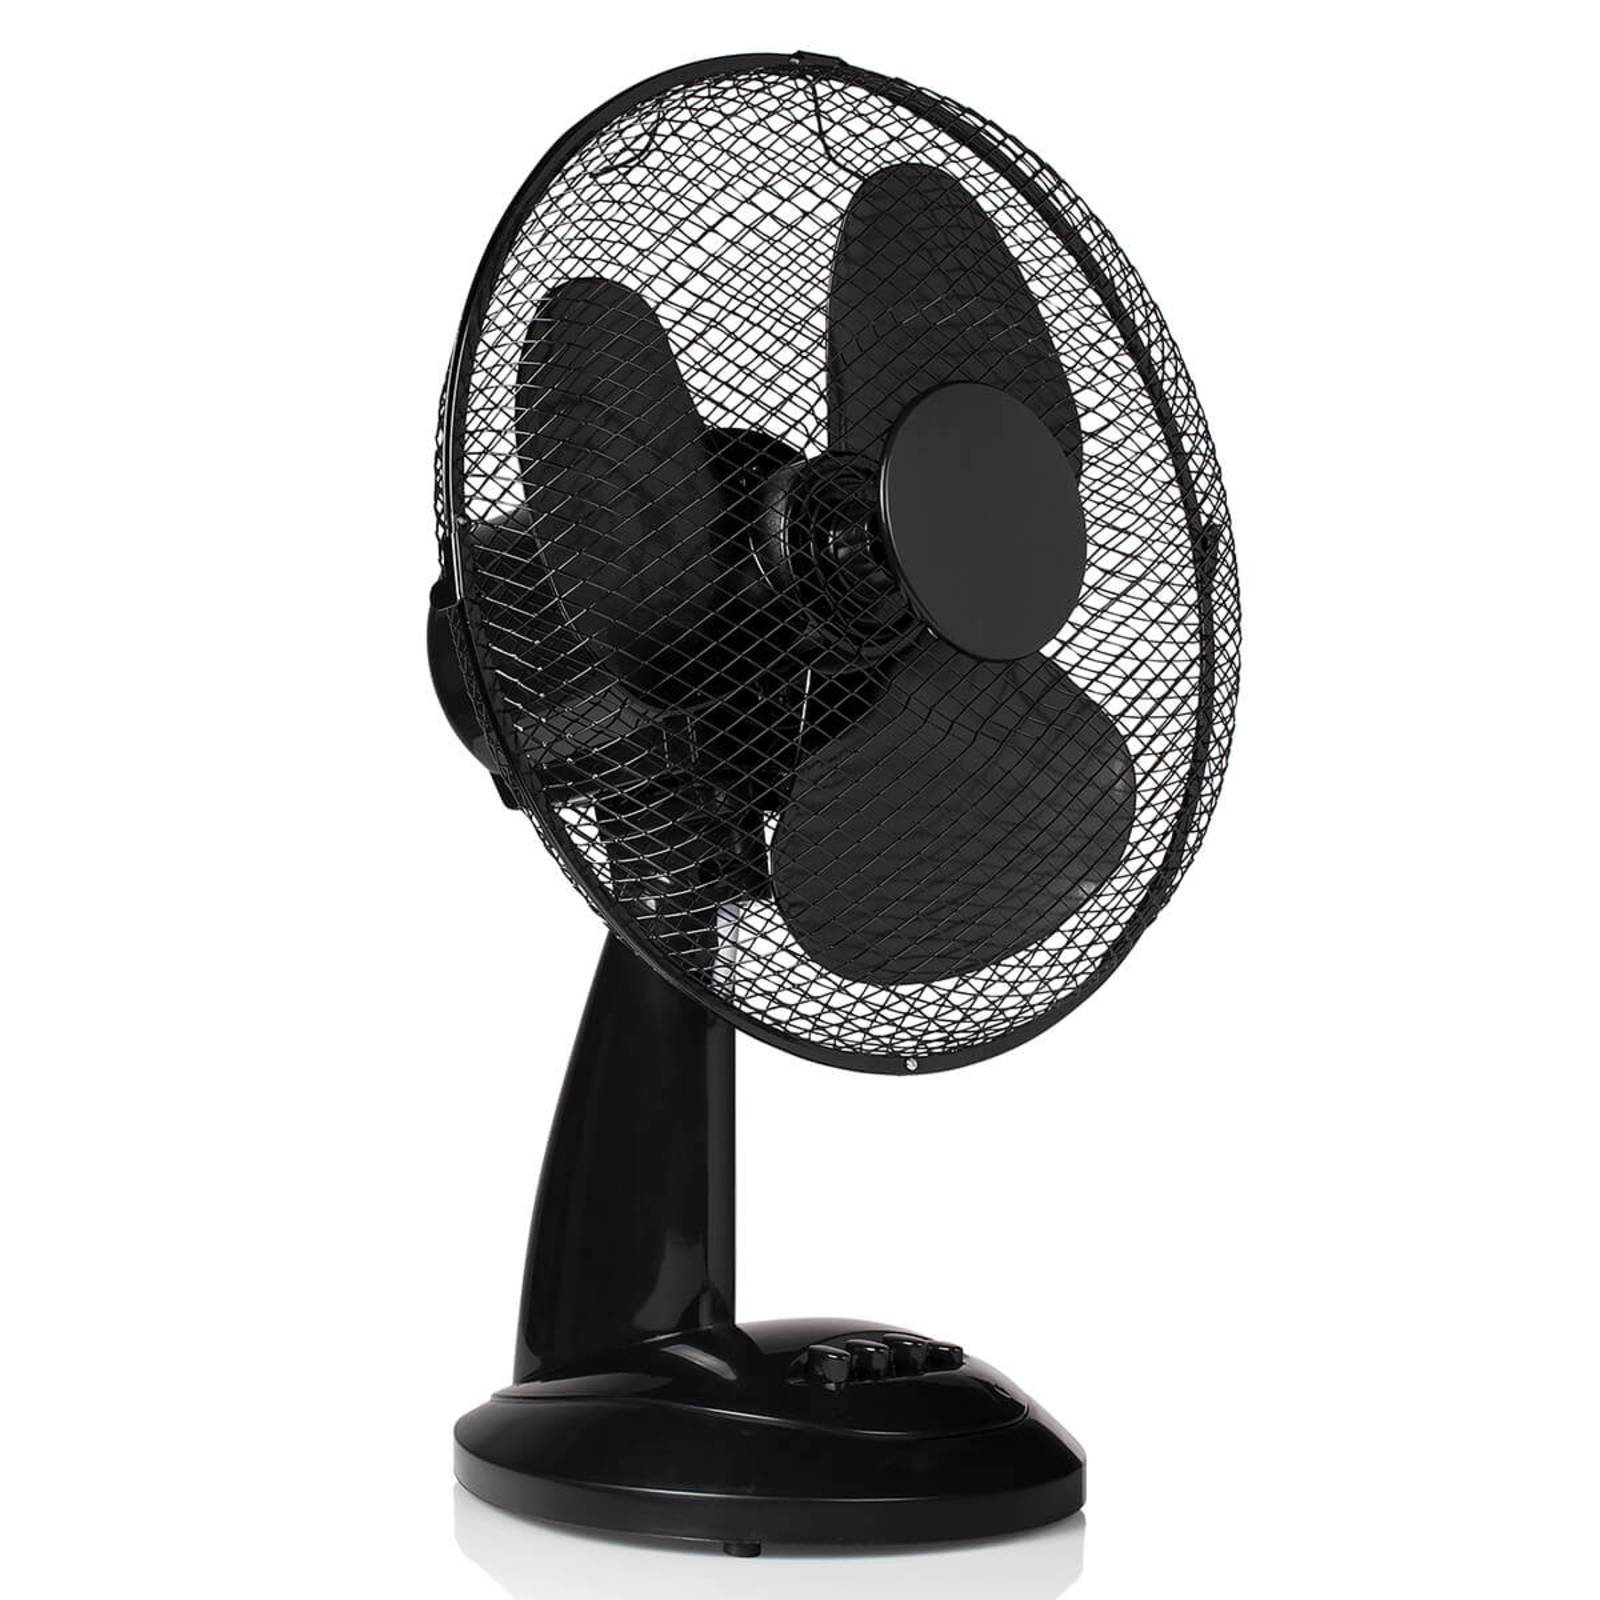 VE5931 pedestal fan, adjustable in three levels